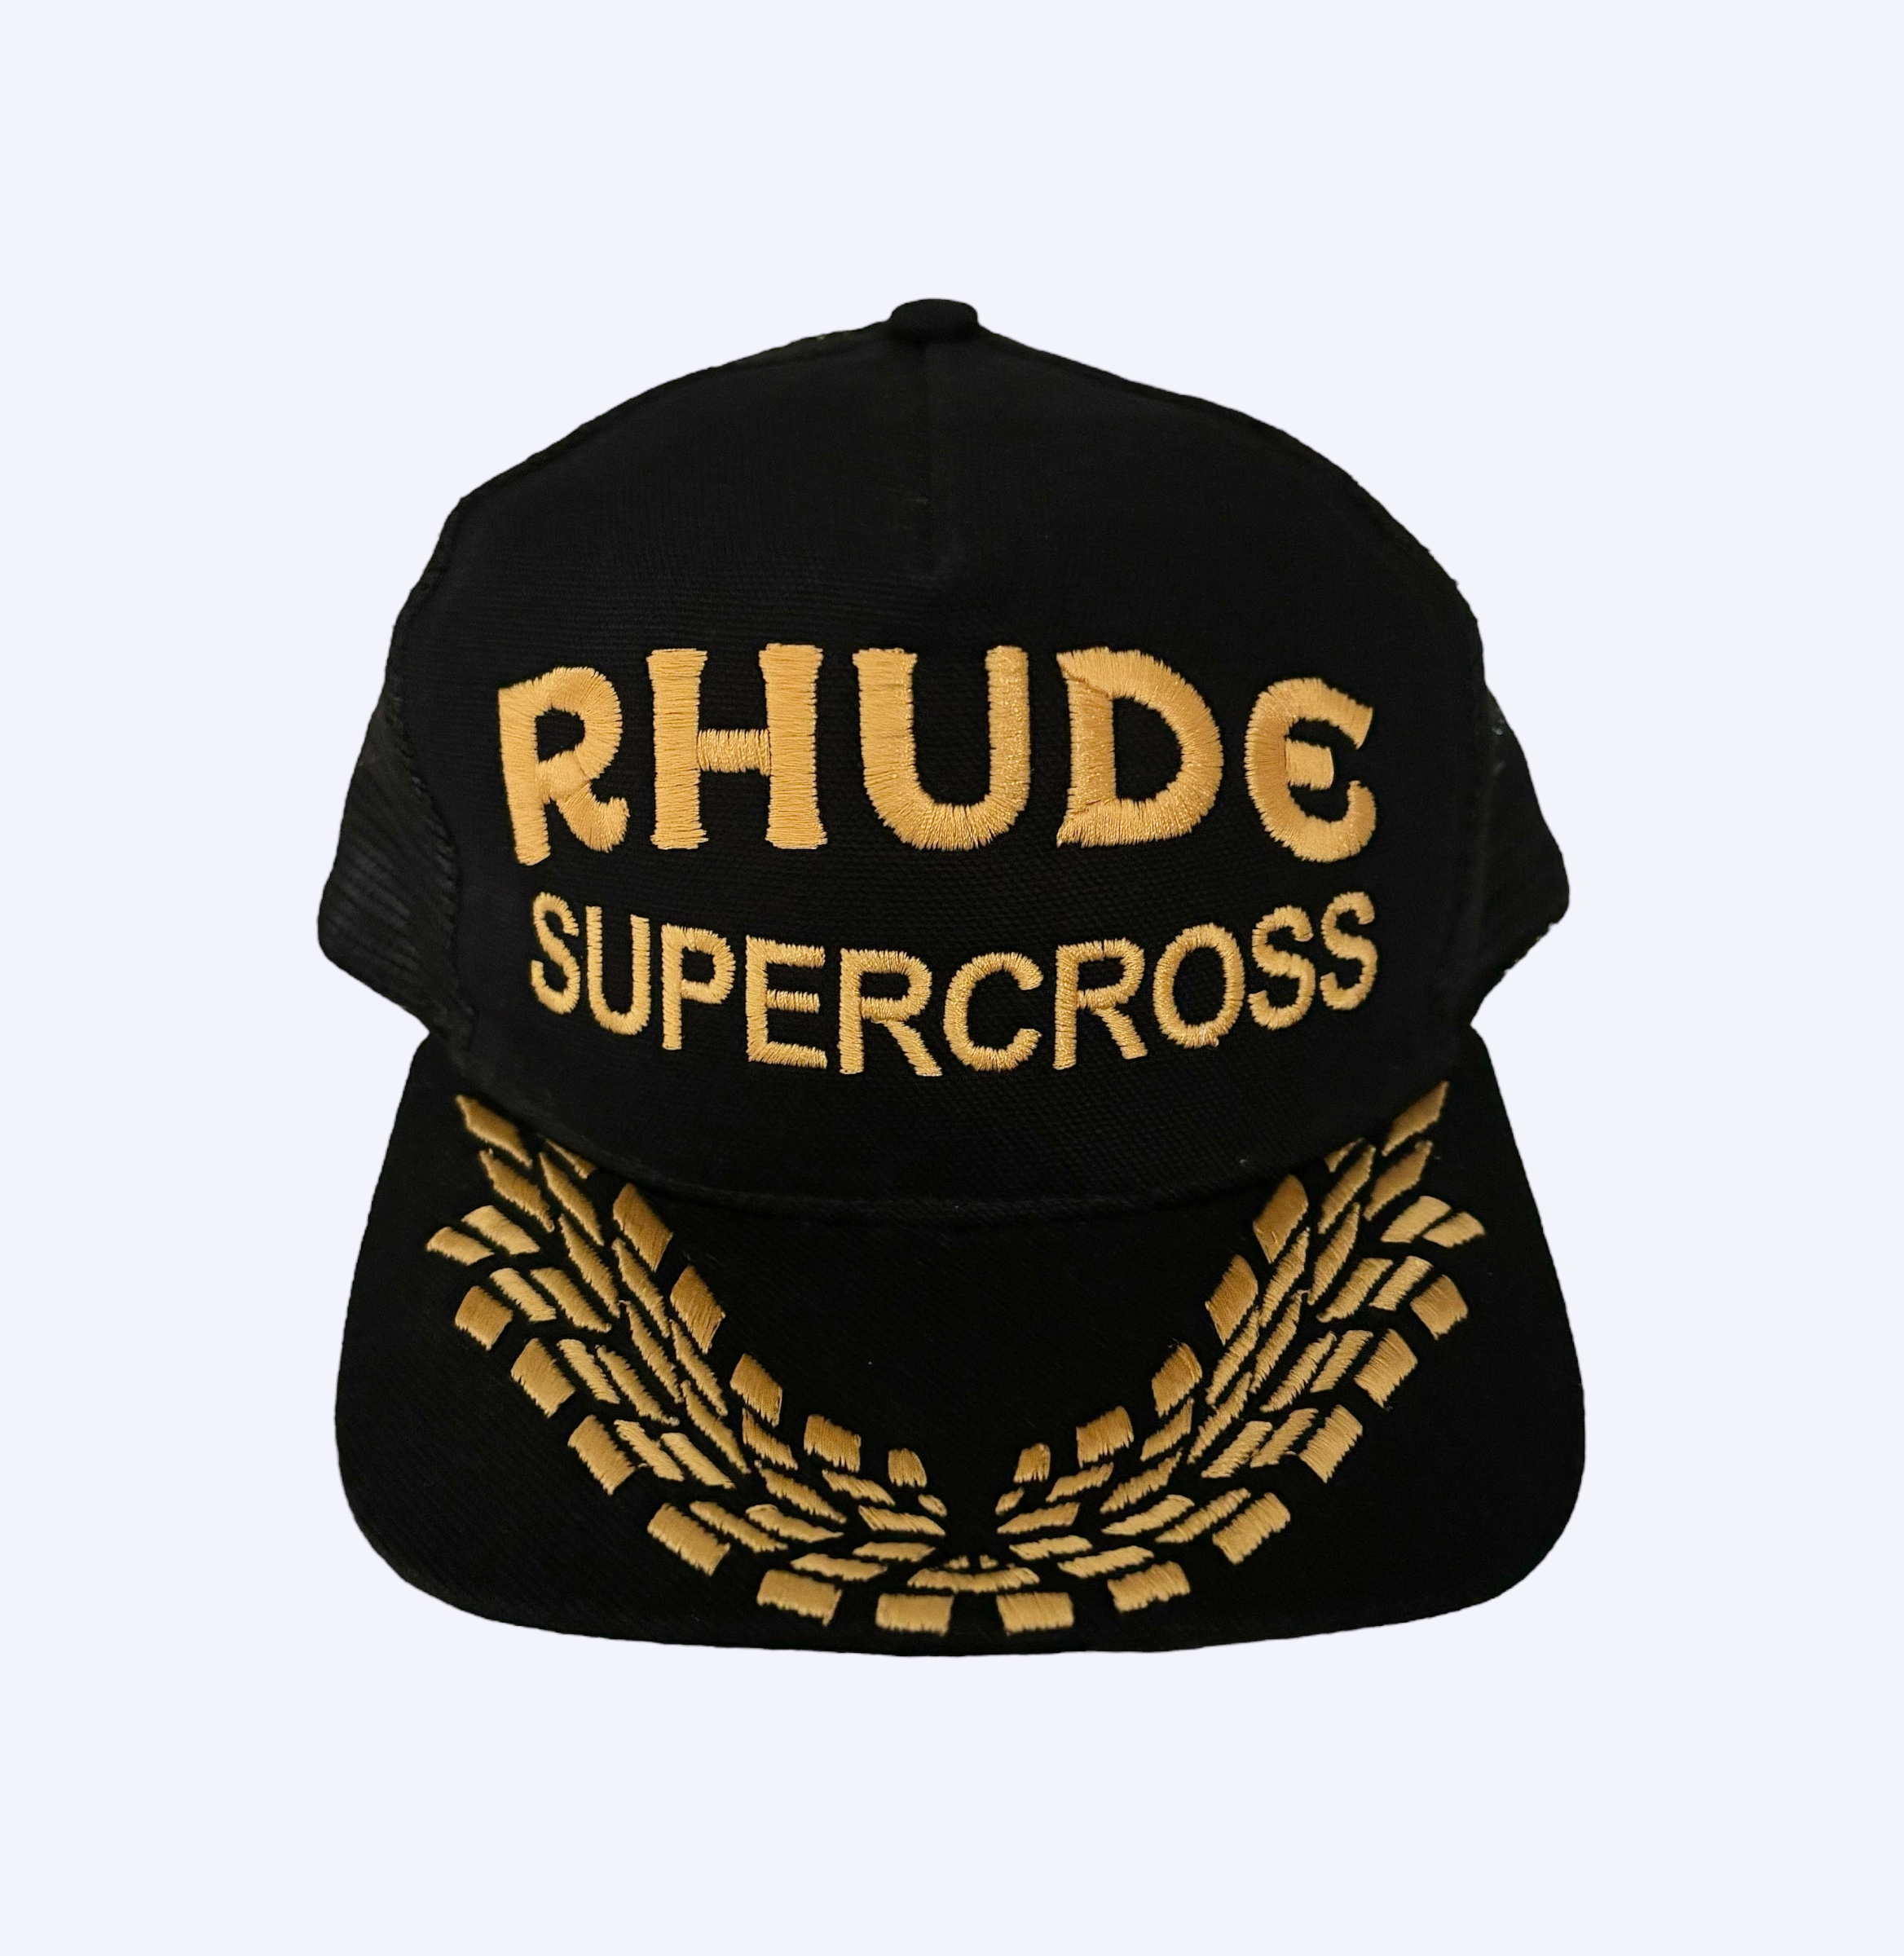 Rhude supercross